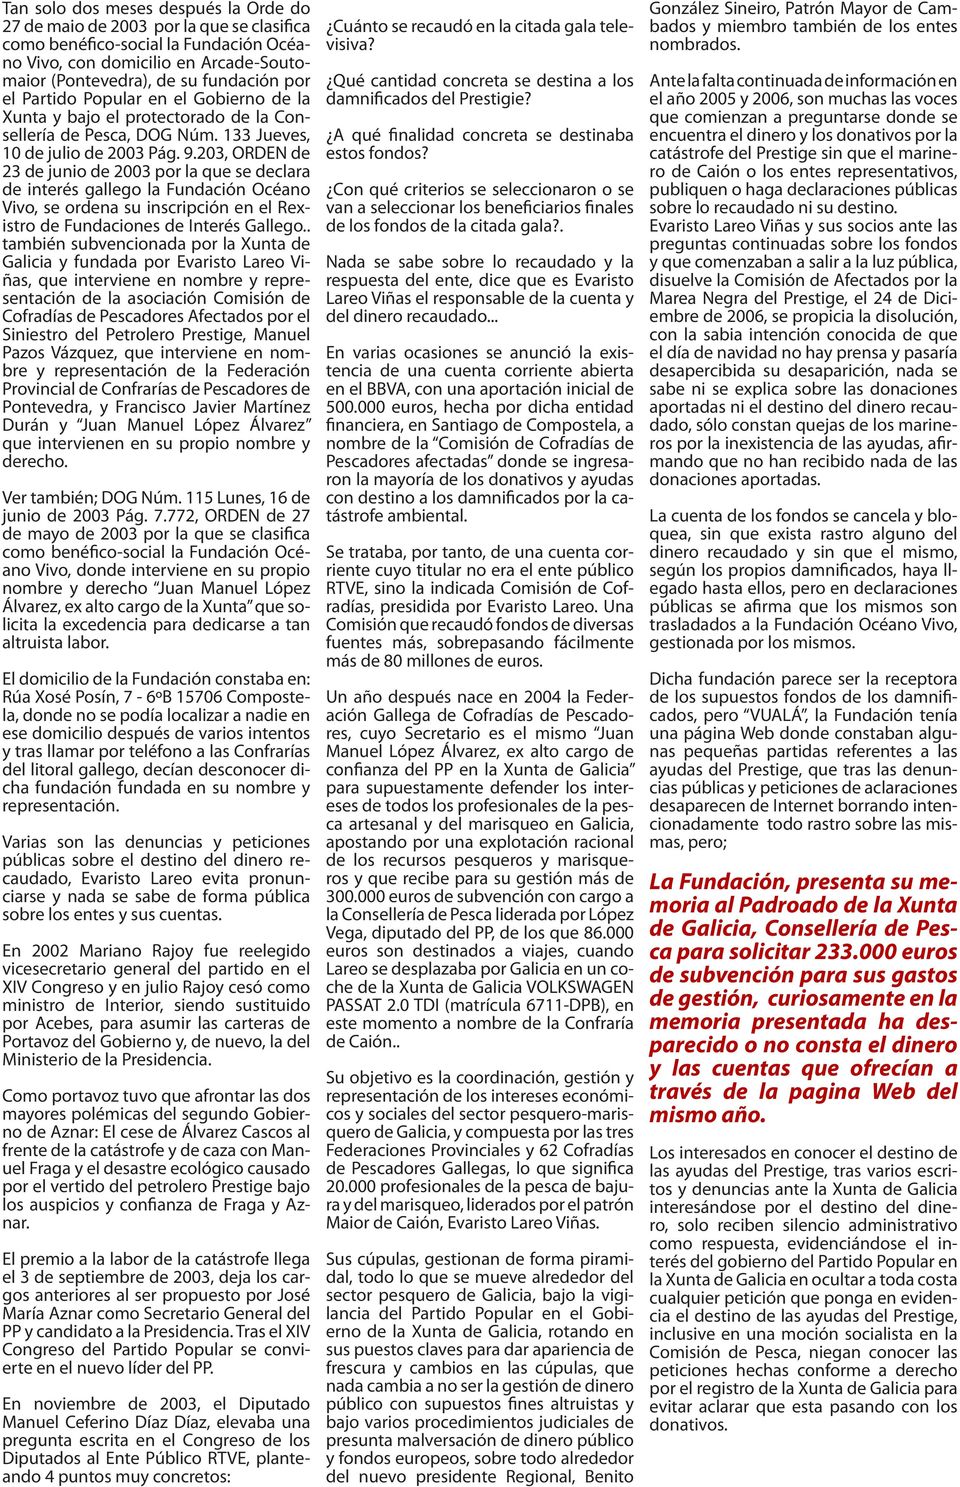 203, ORDEN de 23 de junio de 2003 por la que se declara de interés gallego la Fundación Océano Vivo, se ordena su inscripción en el Rexistro de Fundaciones de Interés Gallego.